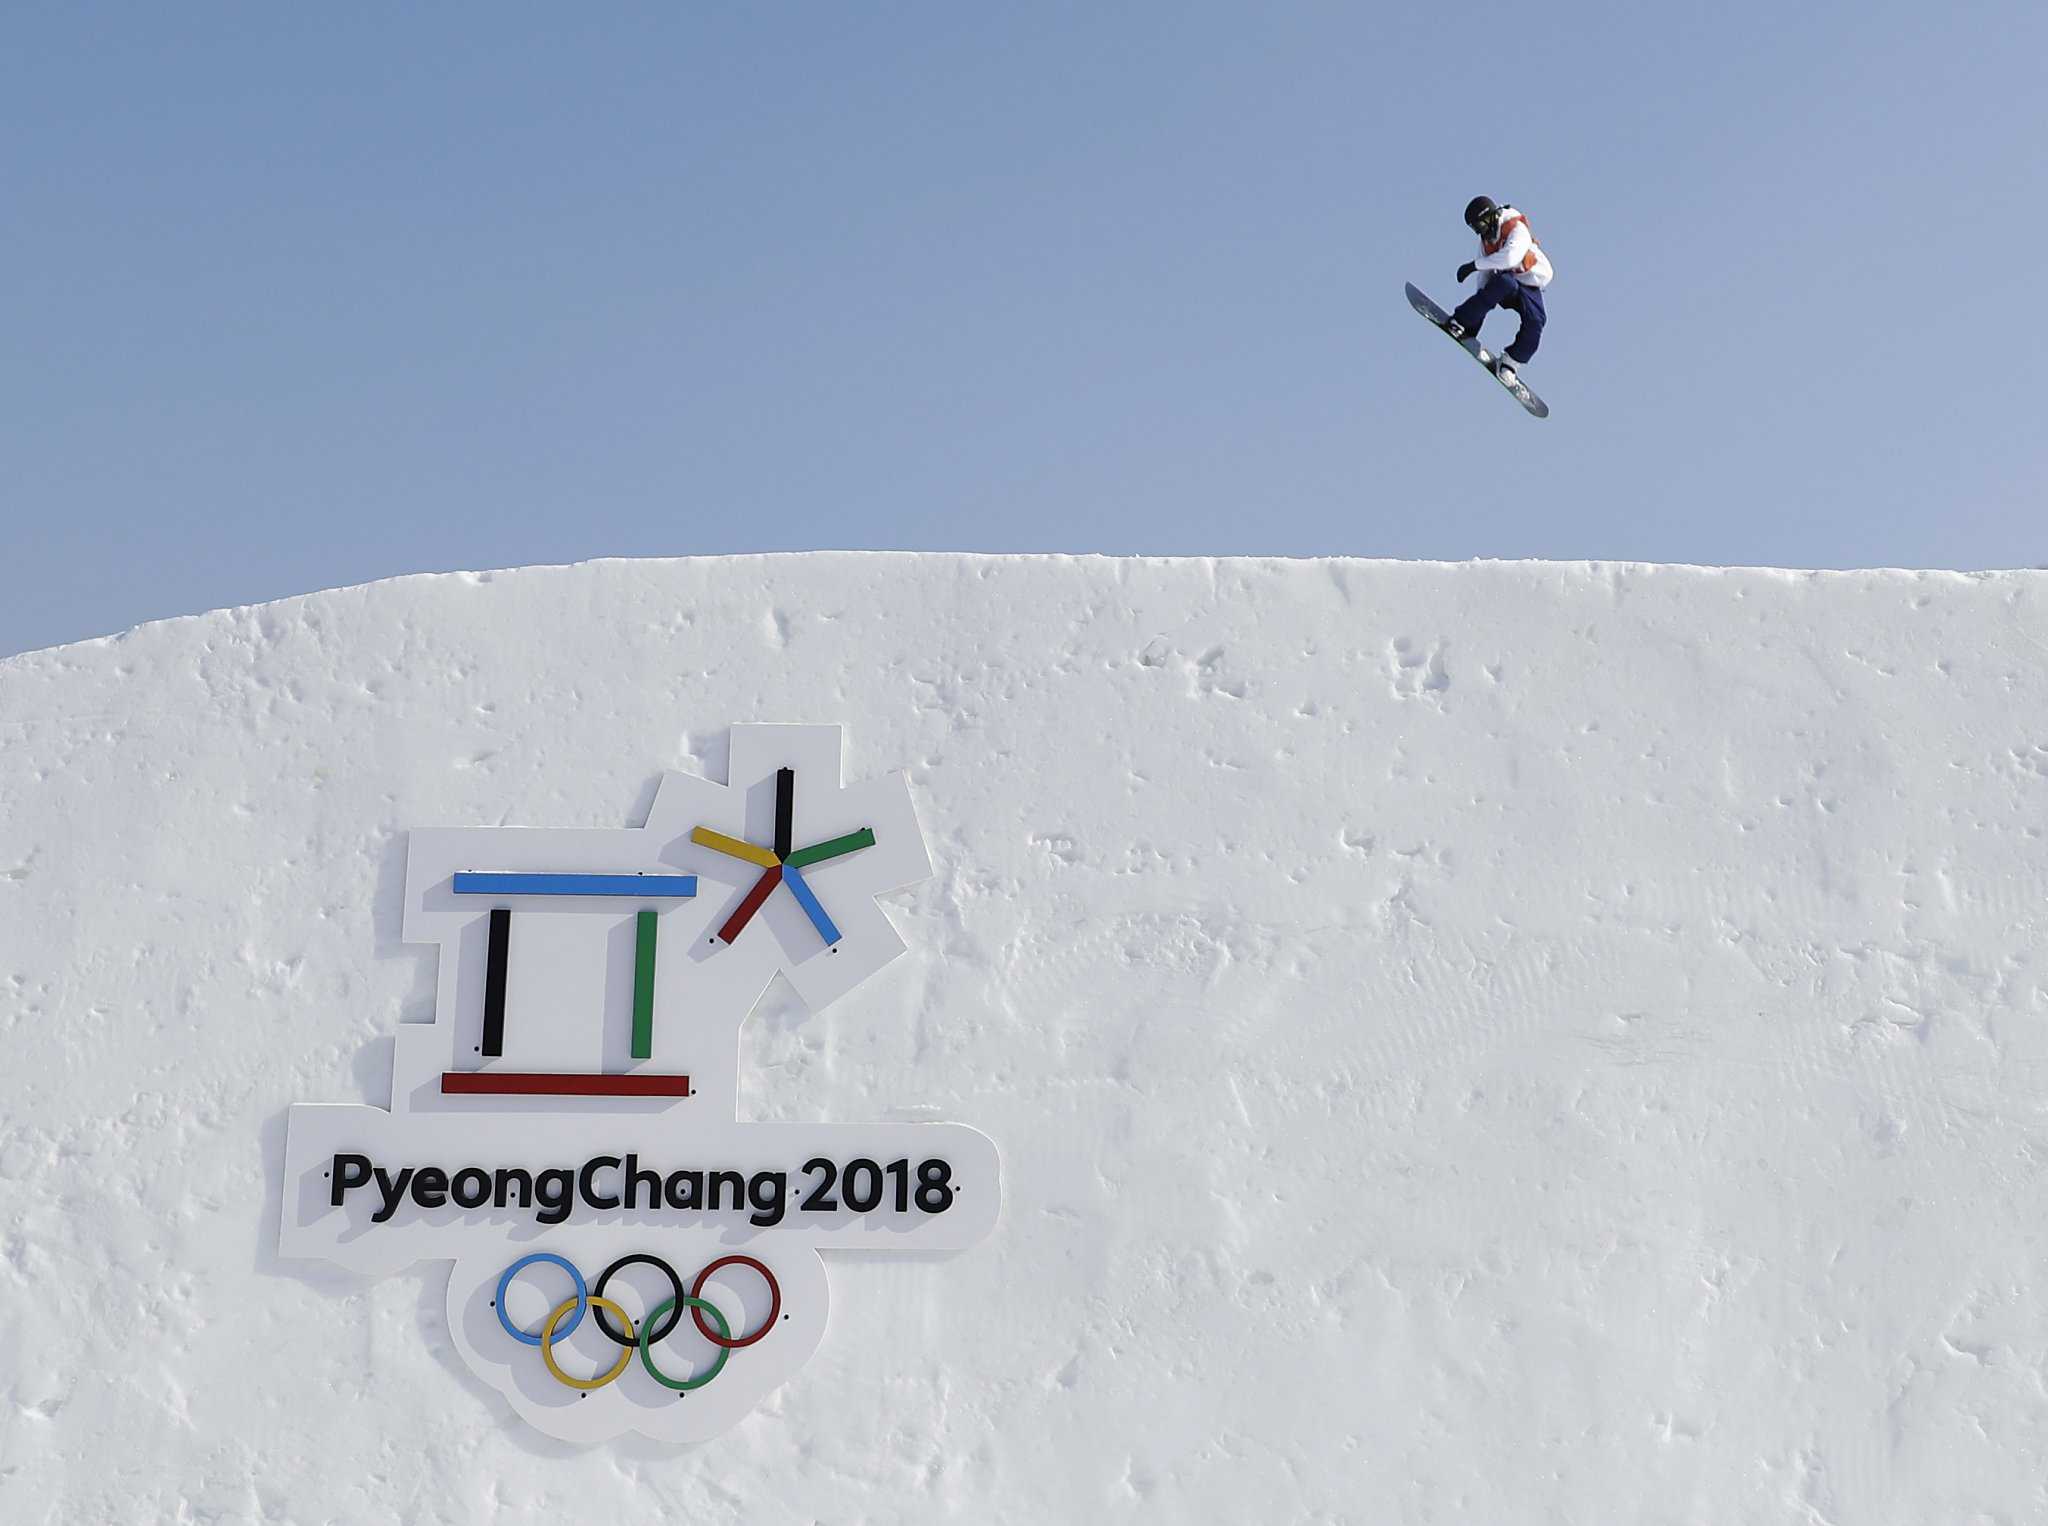 Winter Olympics update: Biathlon winner slips up